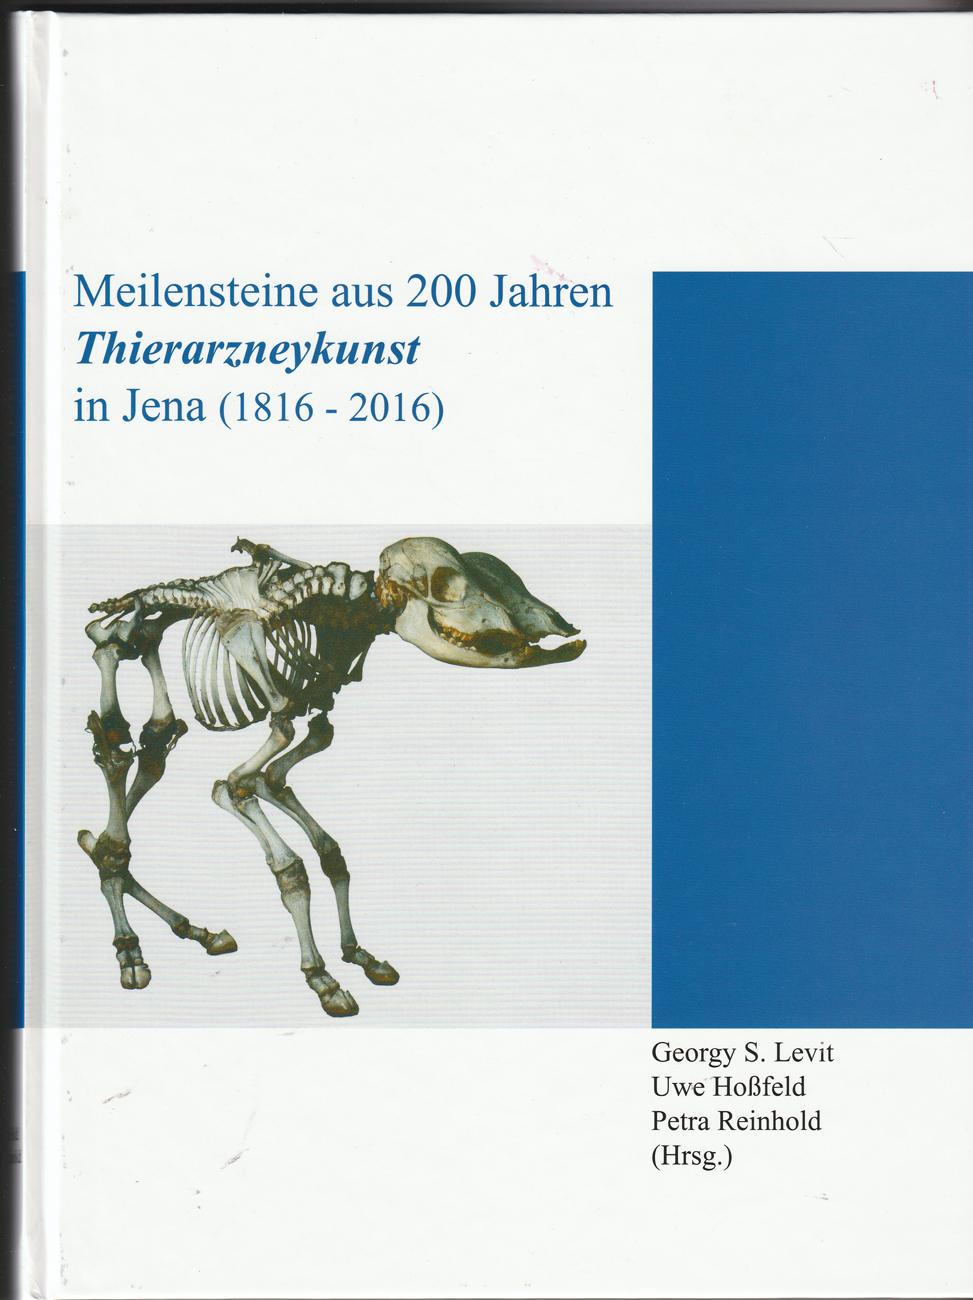 Thierarzneykunst in Jena (1816-2016)